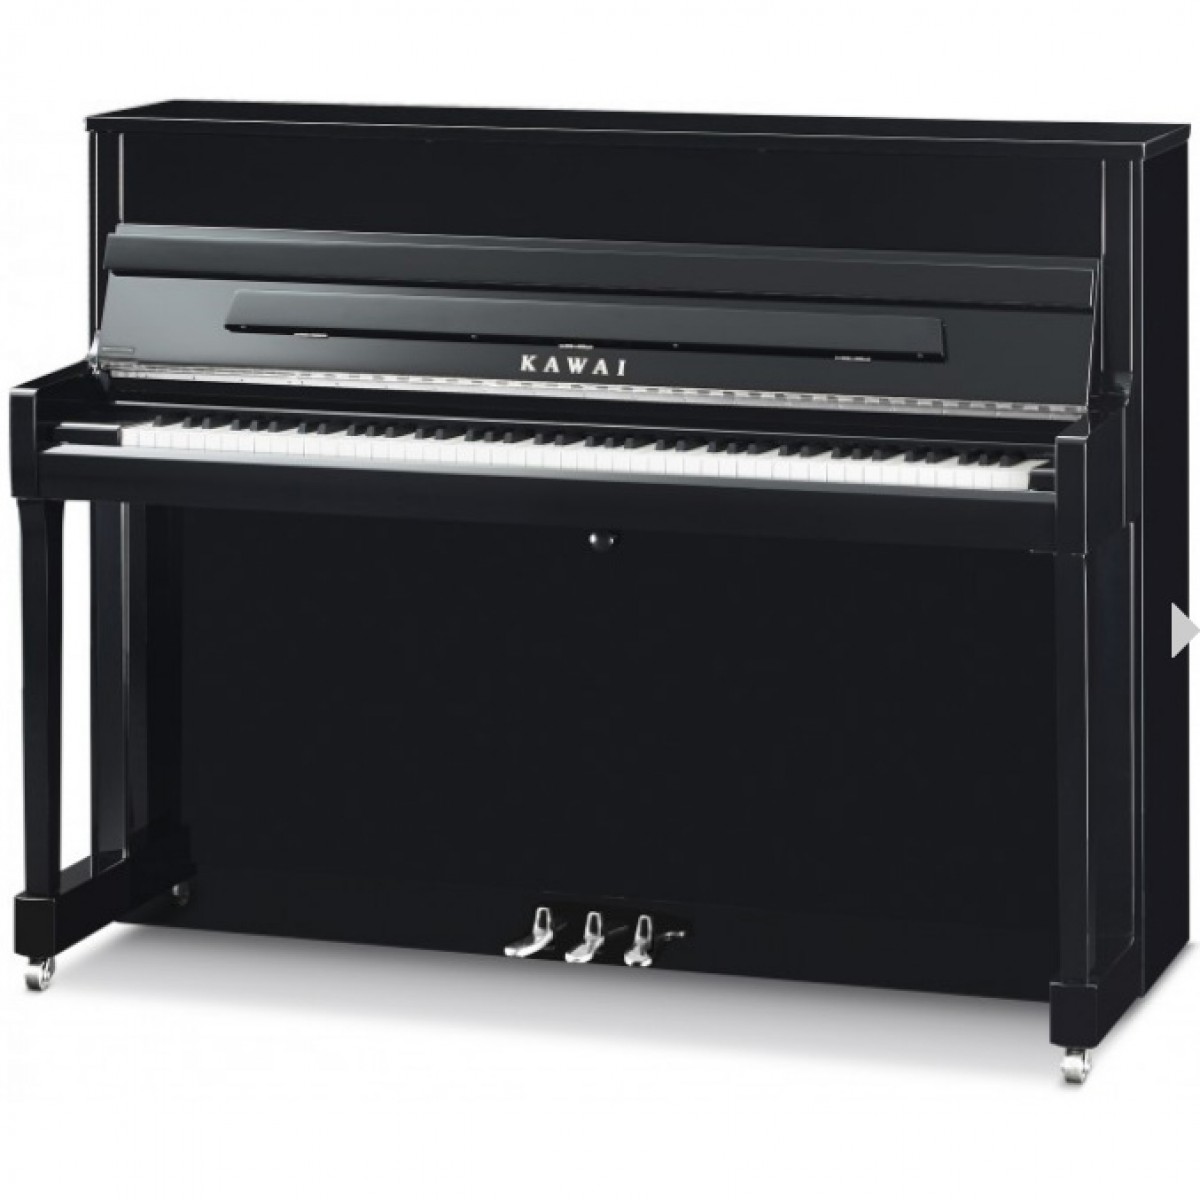 Kawai Klavier K200 schwarz mit Silber Hardware, Ansicht frontal